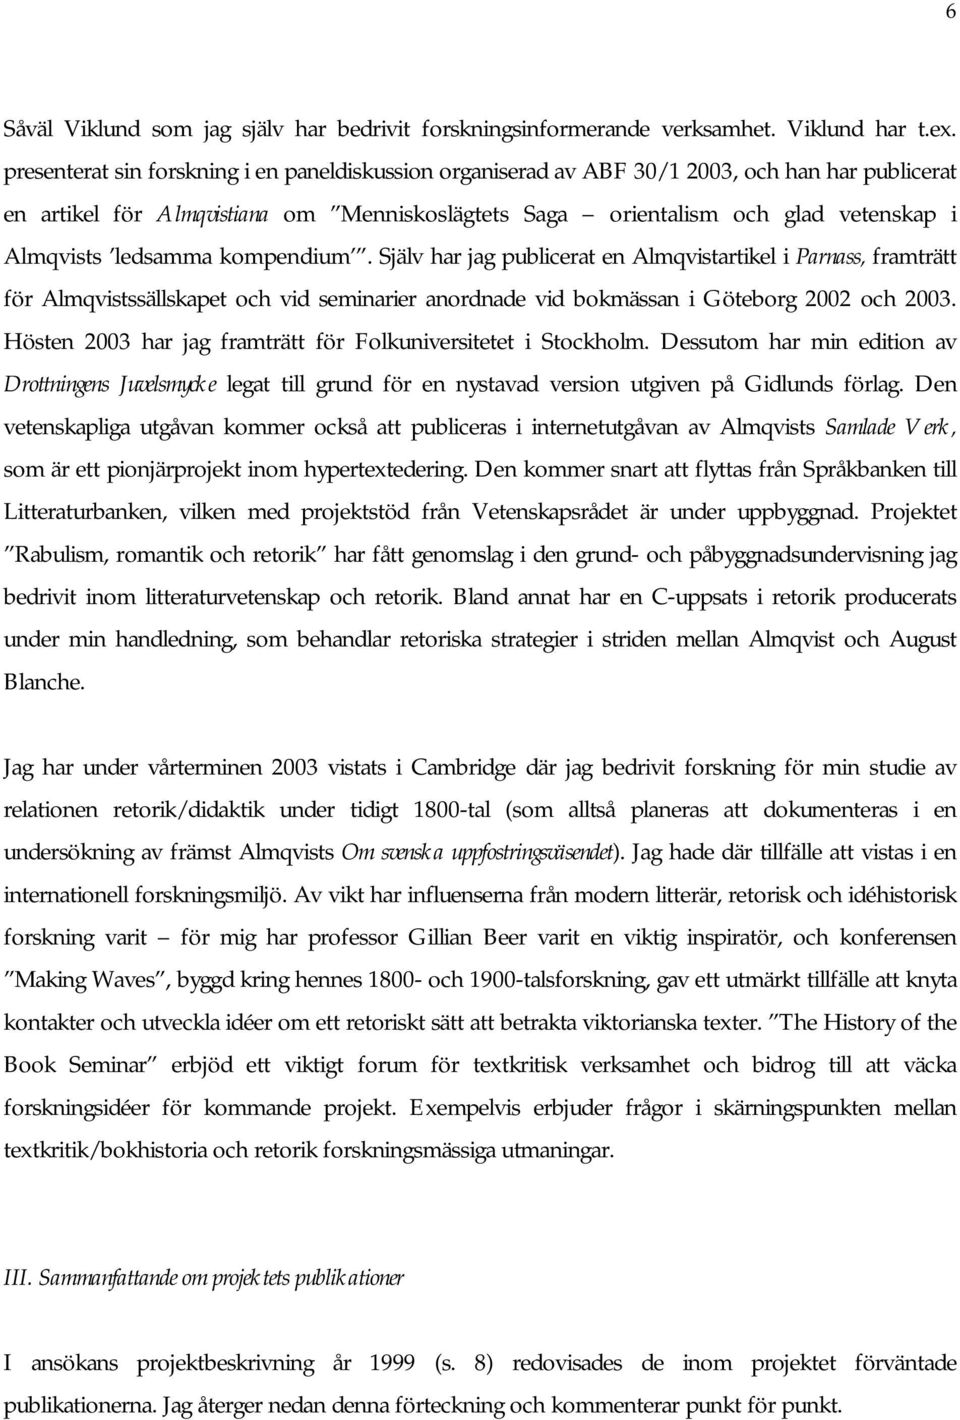 ledsamma kompendium. Själv har jag publicerat en Almqvistartikel i Parnass, framträtt för Almqvistssällskapet och vid seminarier anordnade vid bokmässan i Göteborg 2002 och 2003.